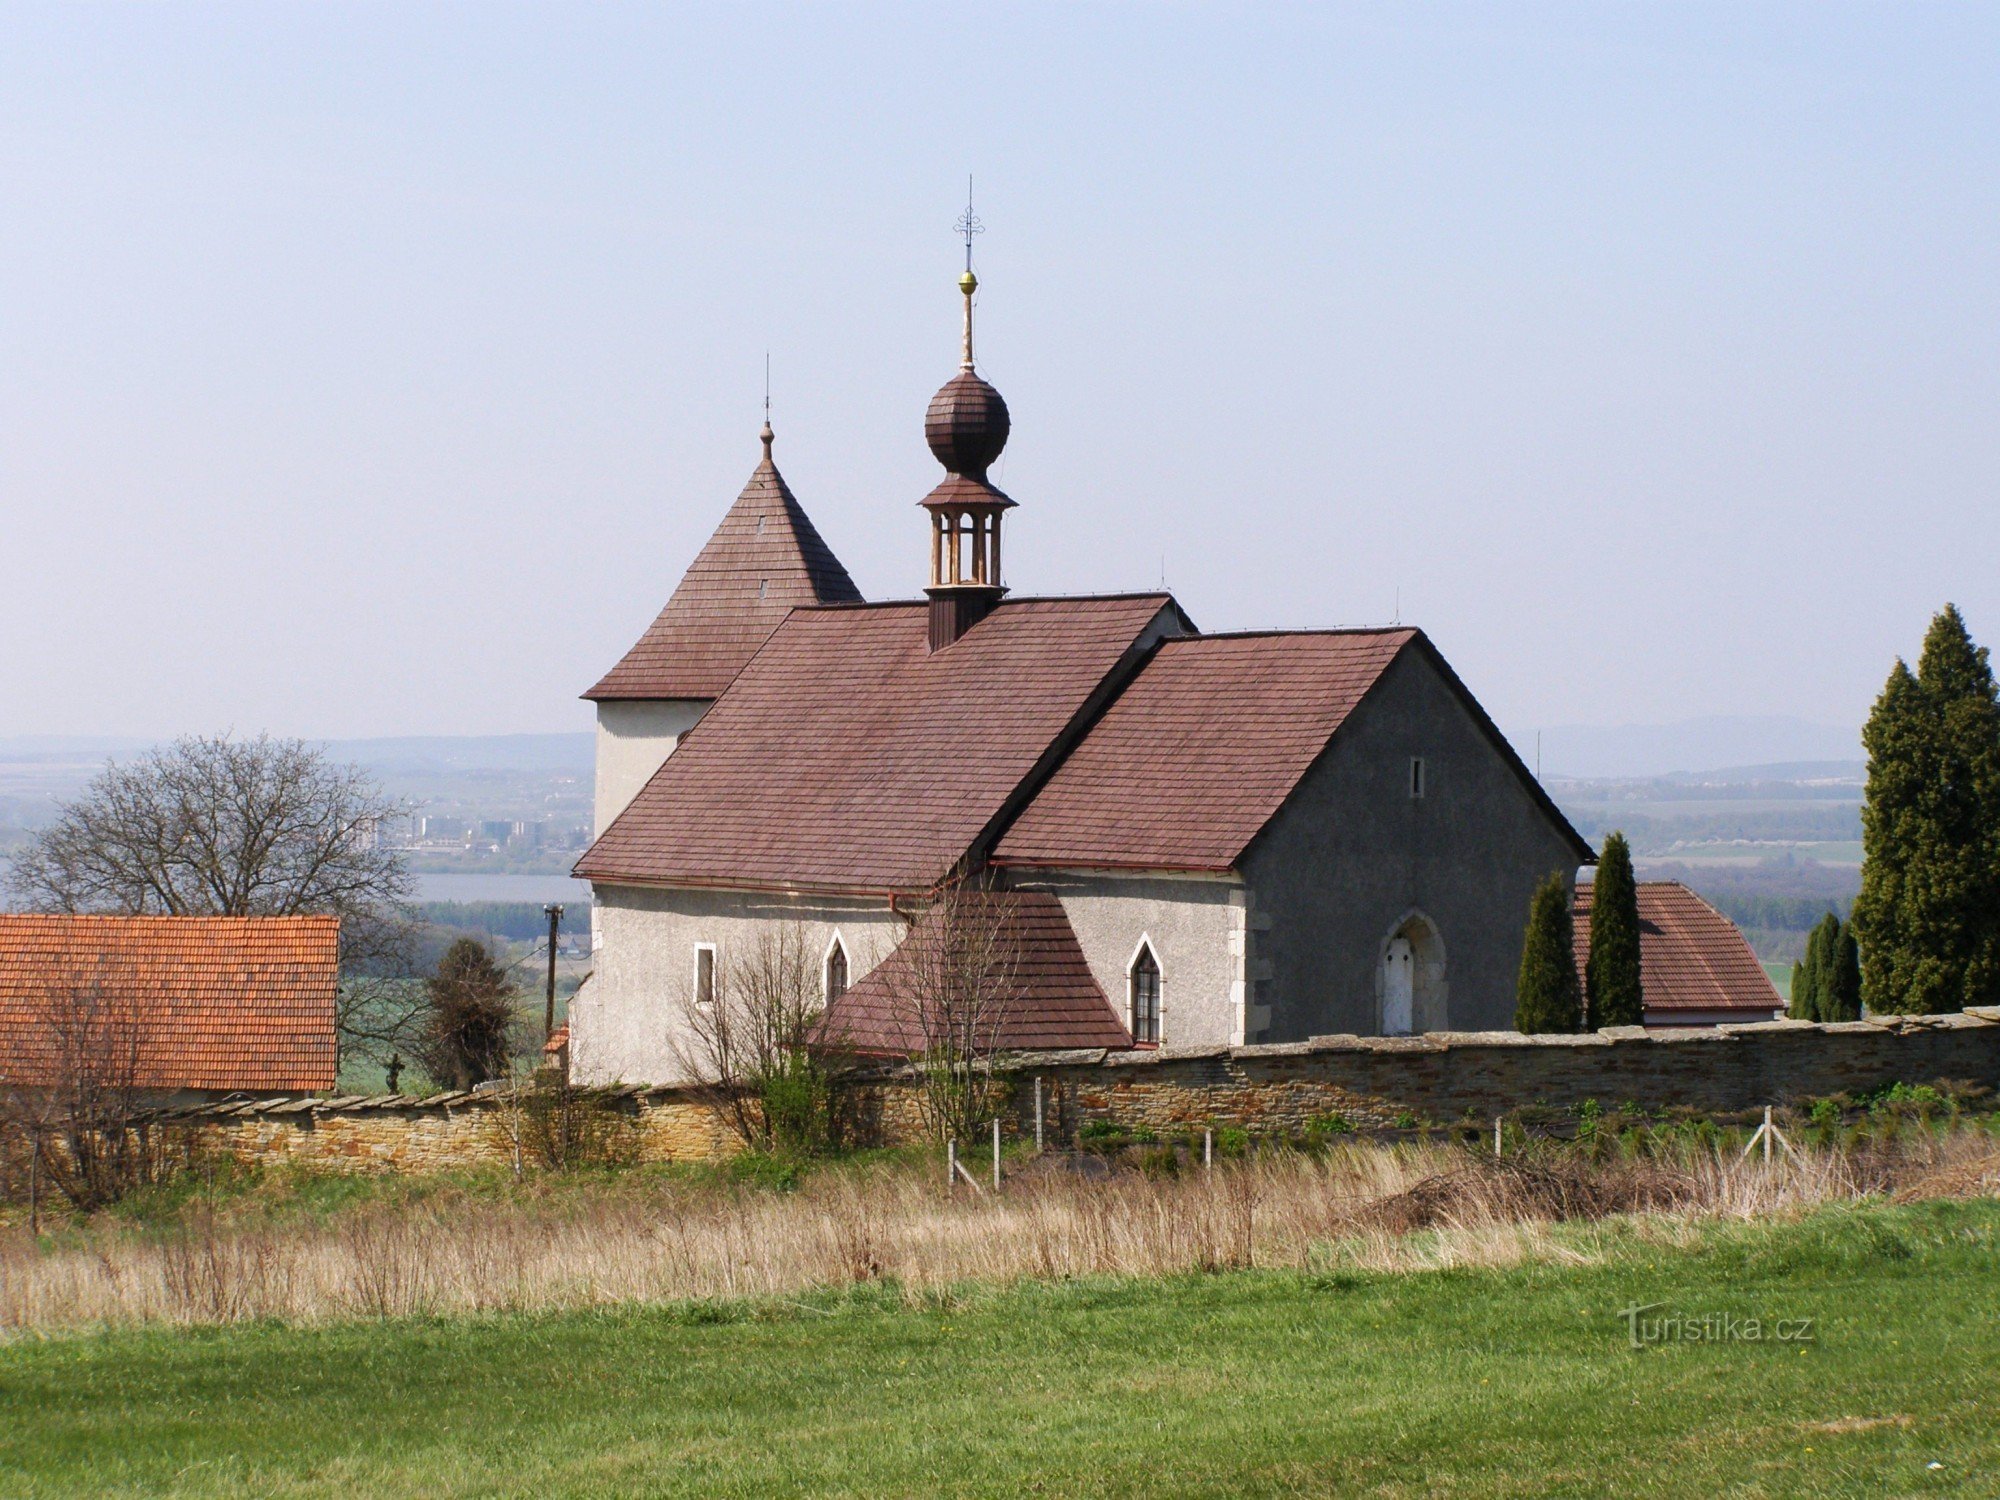 Václavice - iglesia de St. Wenceslao con el campanario